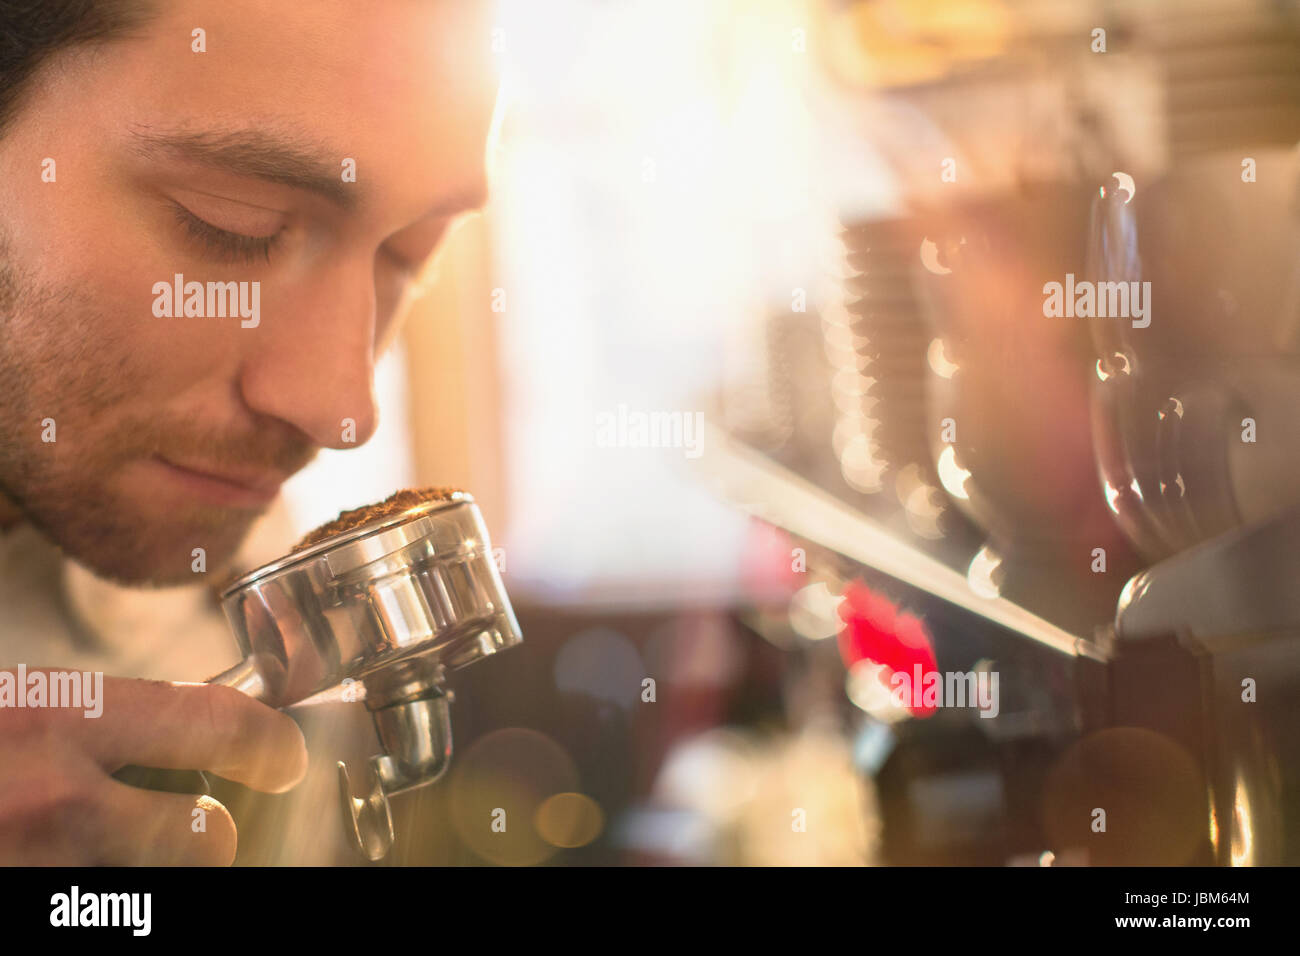 Nahaufnahme der Barista duftenden Espresso Gelände an Espresso-Maschine Stockfoto